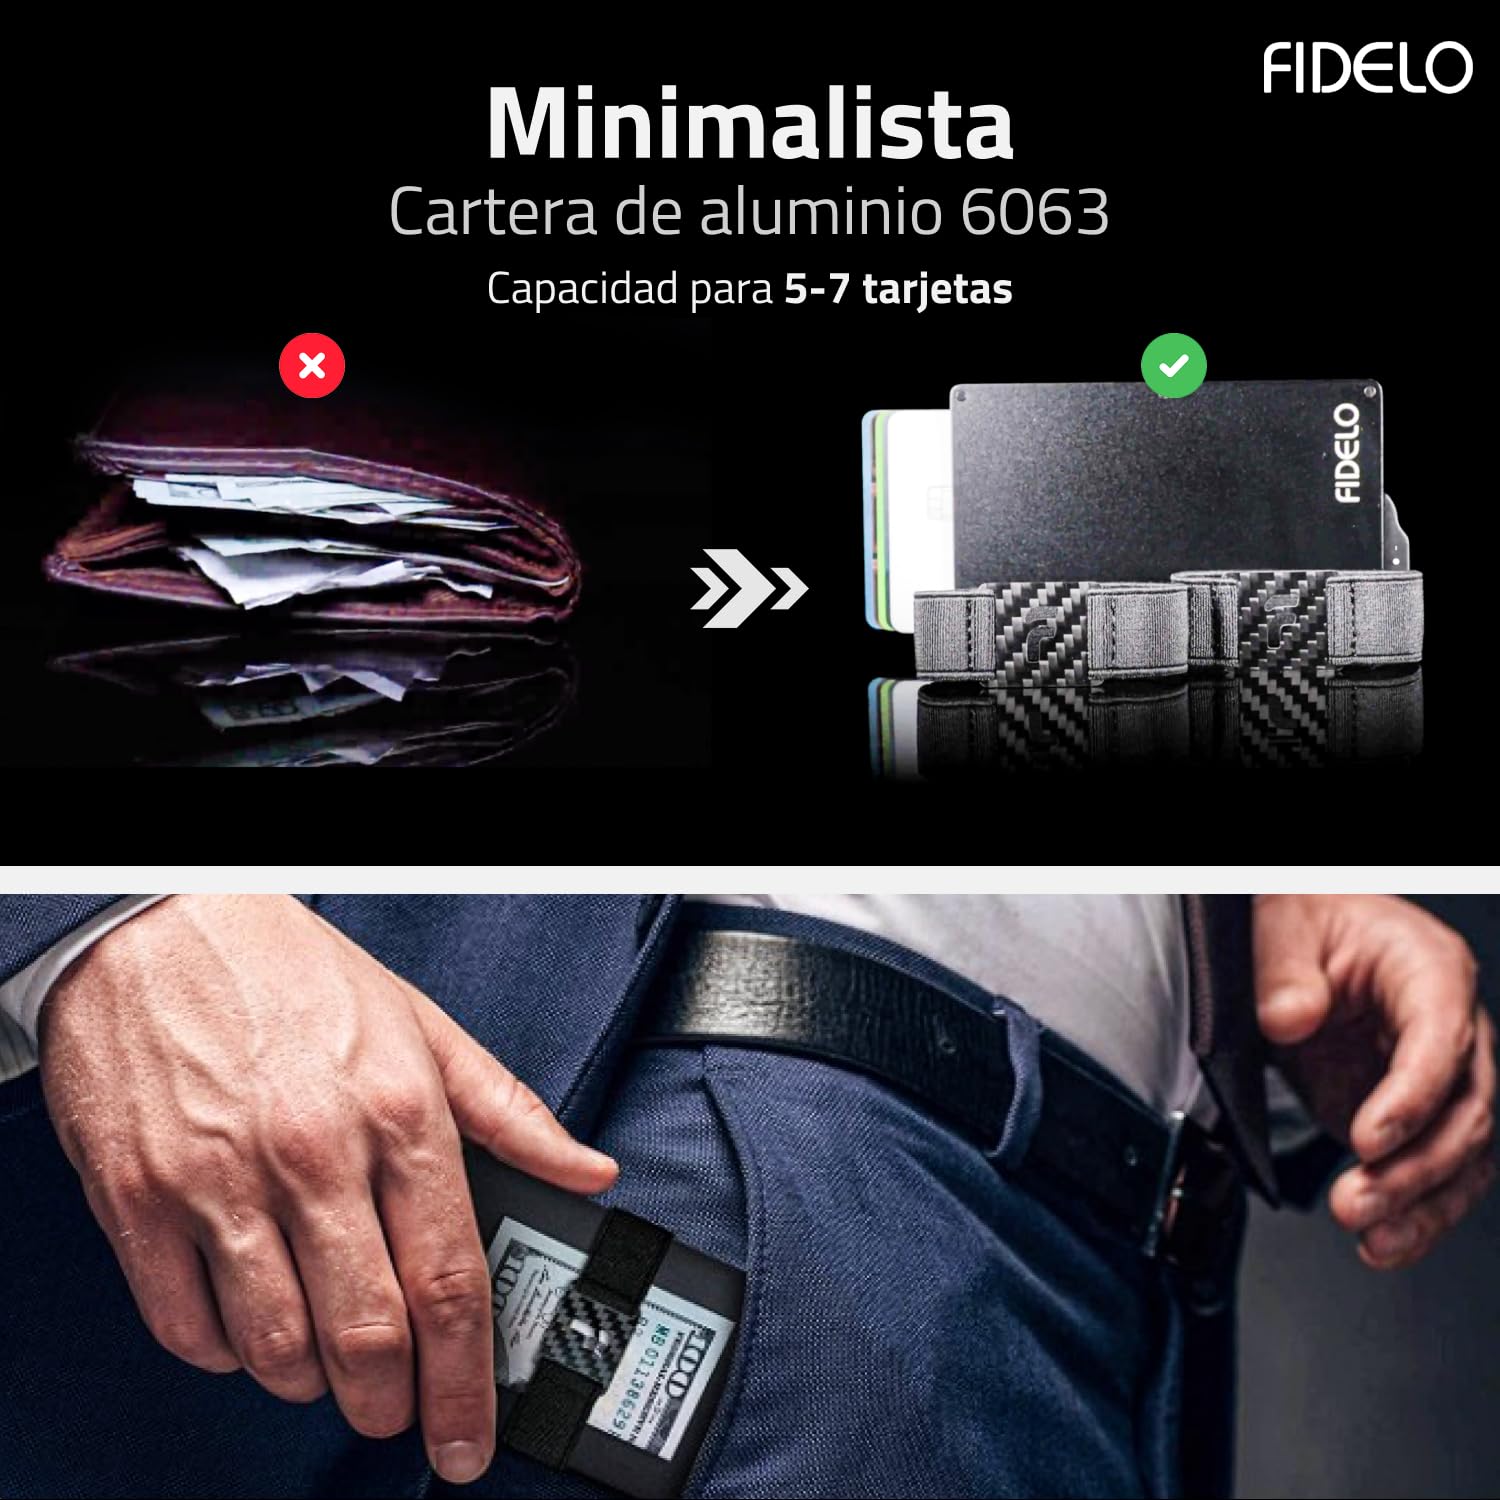 Fidelo Minimalist Wallet for Men - RFID Blocking Pop up Wallet Credit Card Holder, Slim Wallet for Men 6063 Aluminum Wallet with a Card Clip Holder with a Removable Leather Case - Vintage Brown